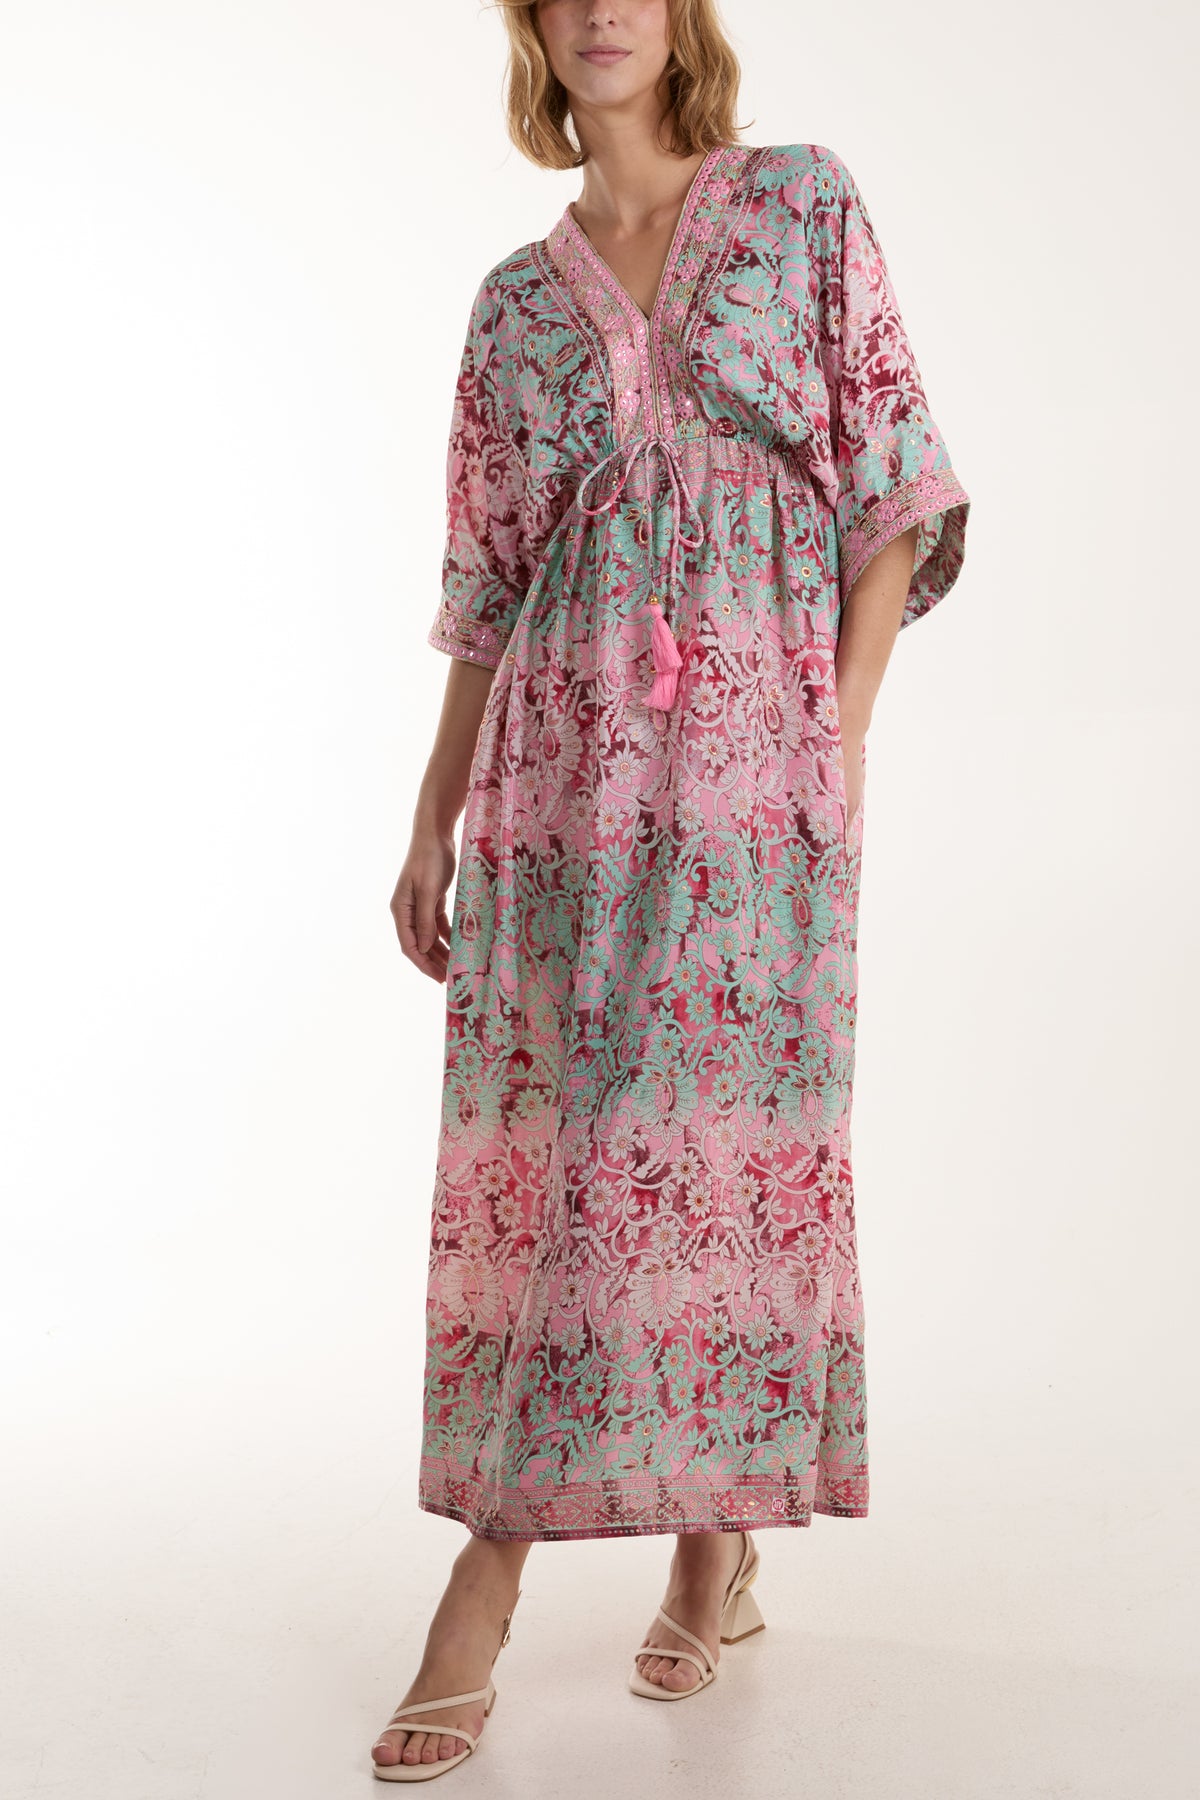 Floral Design Embellished Art Silk Kimono Dress